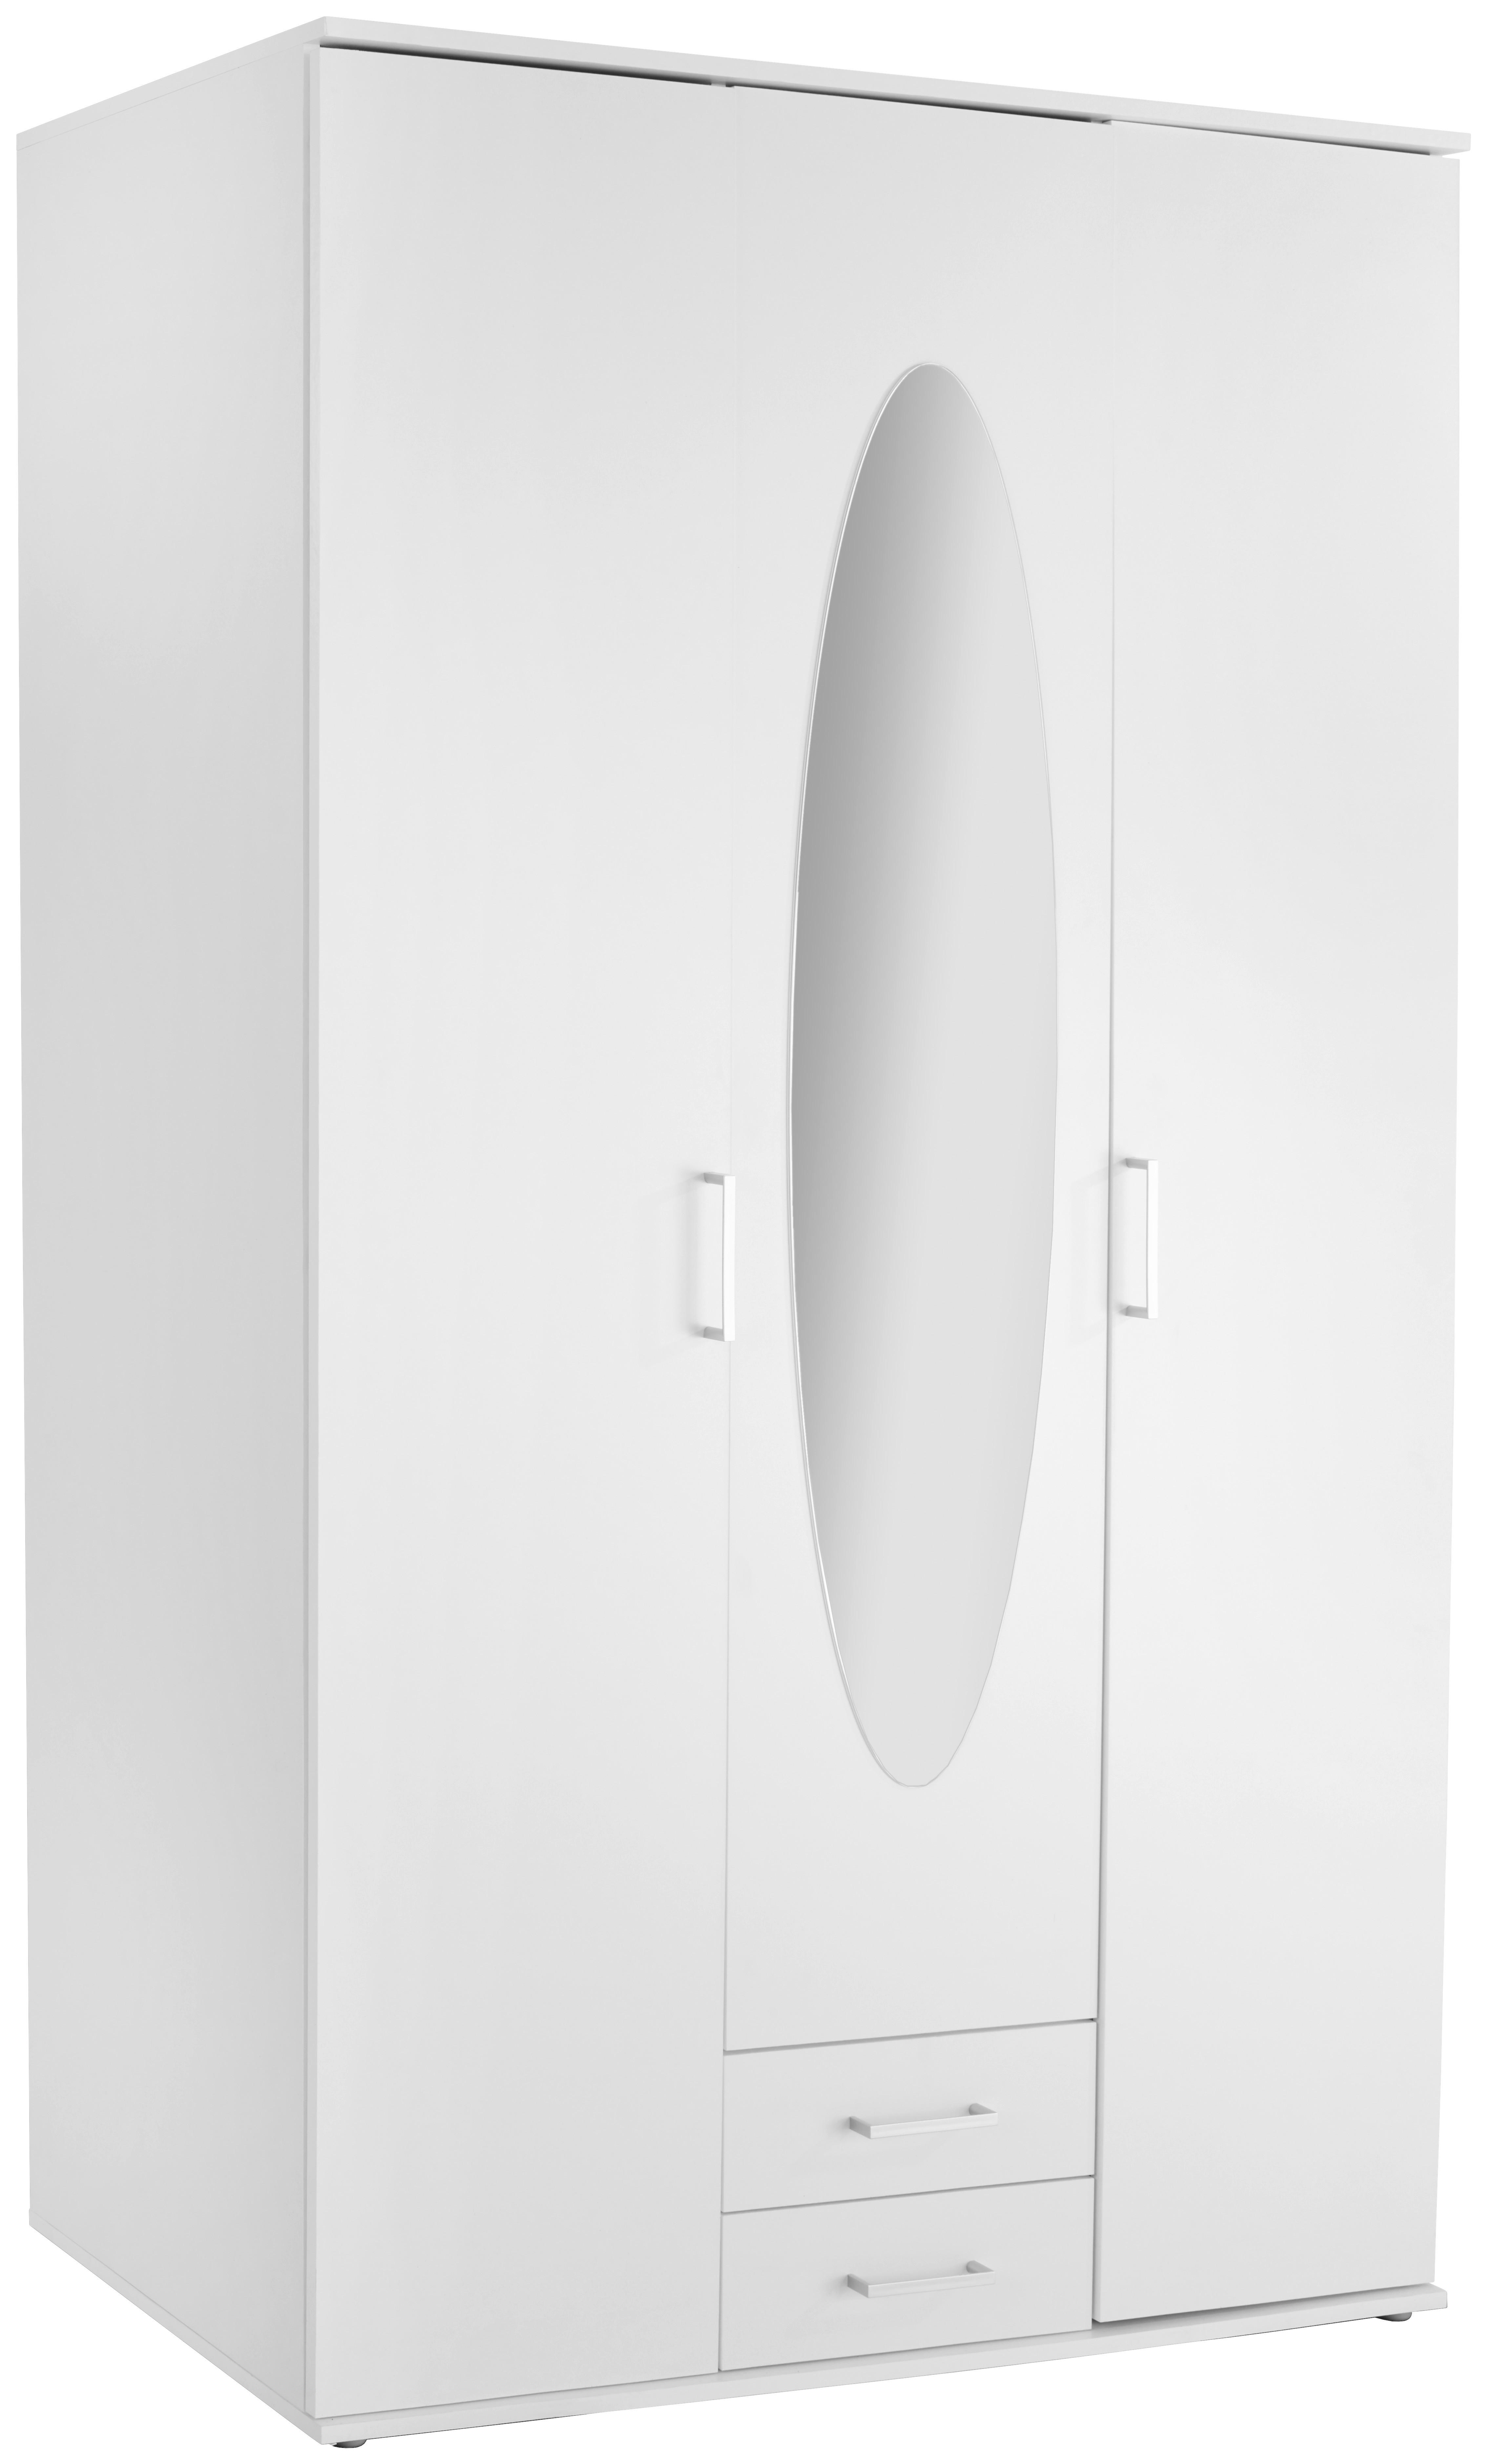 Kleiderschrank Karl aus MDF 120x195 cm Dekor Weiß 3 Türen 2 Schubladen  Spiegel